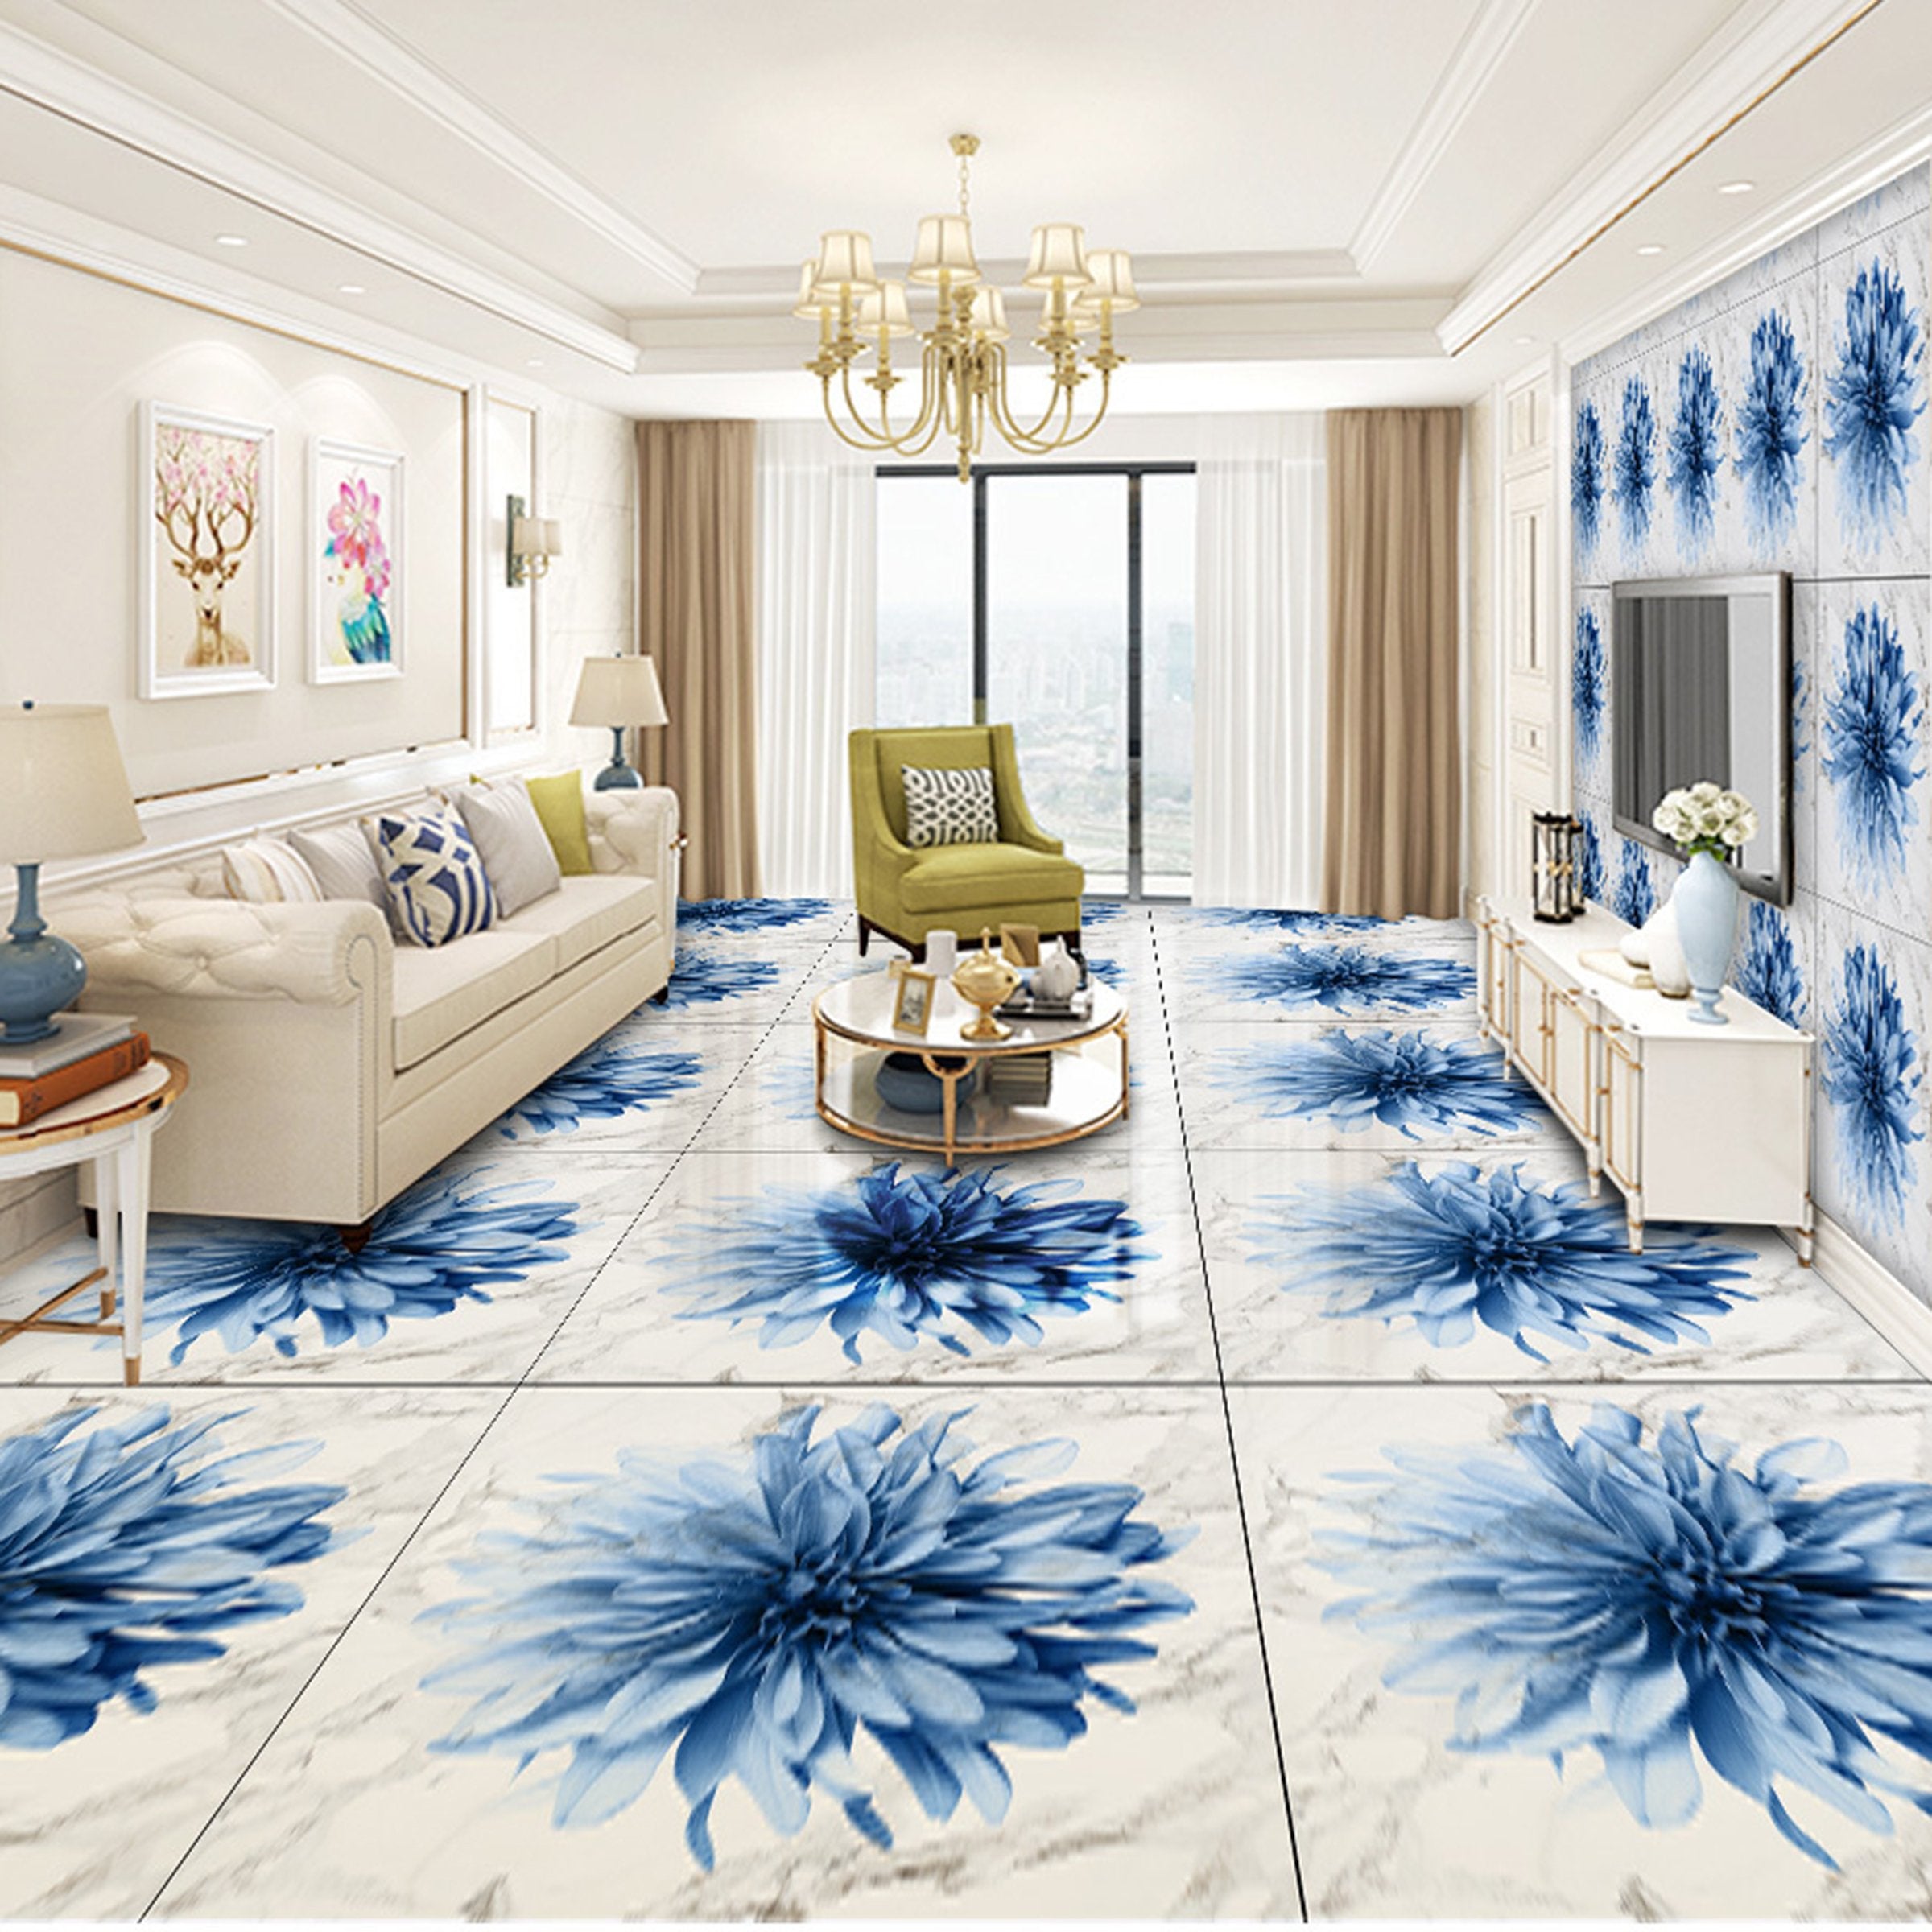 3D Blue Petals WG656 Floor Mural Wallpaper AJ Wallpaper 2 